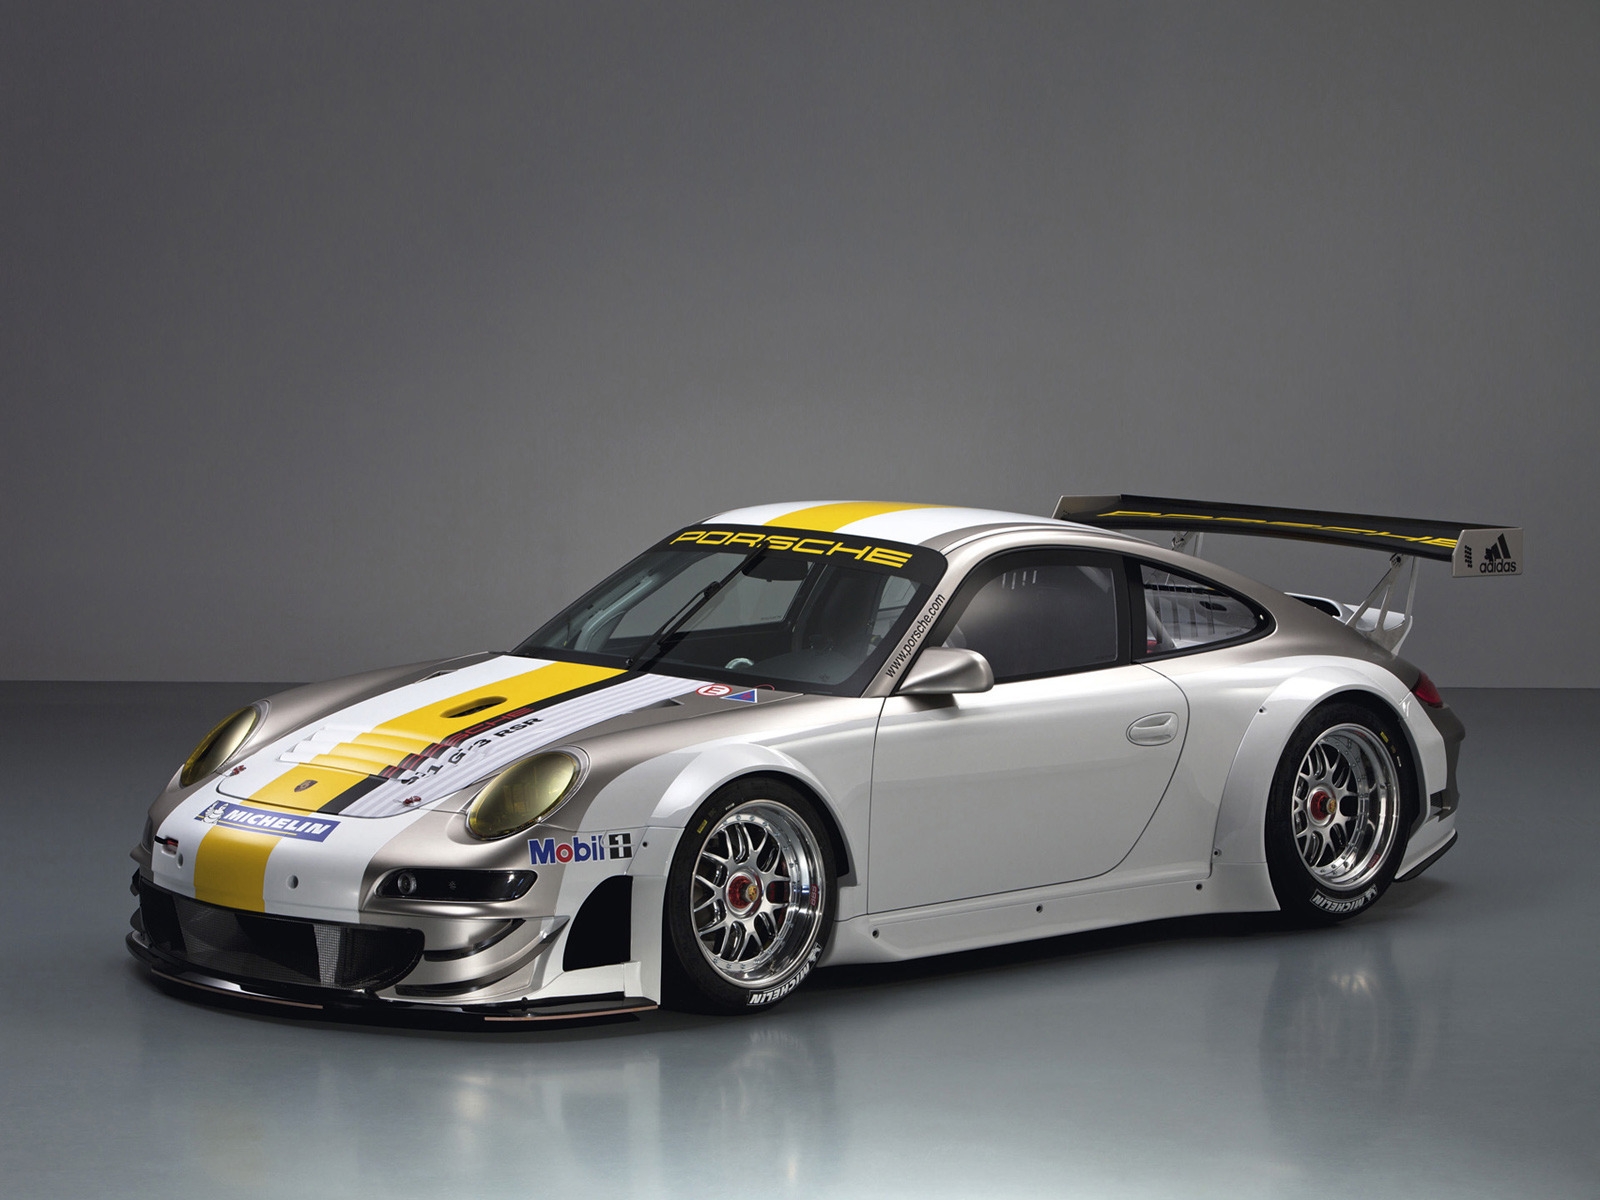 Porsche 911 GT3 RSR Studio for 1600 x 1200 resolution